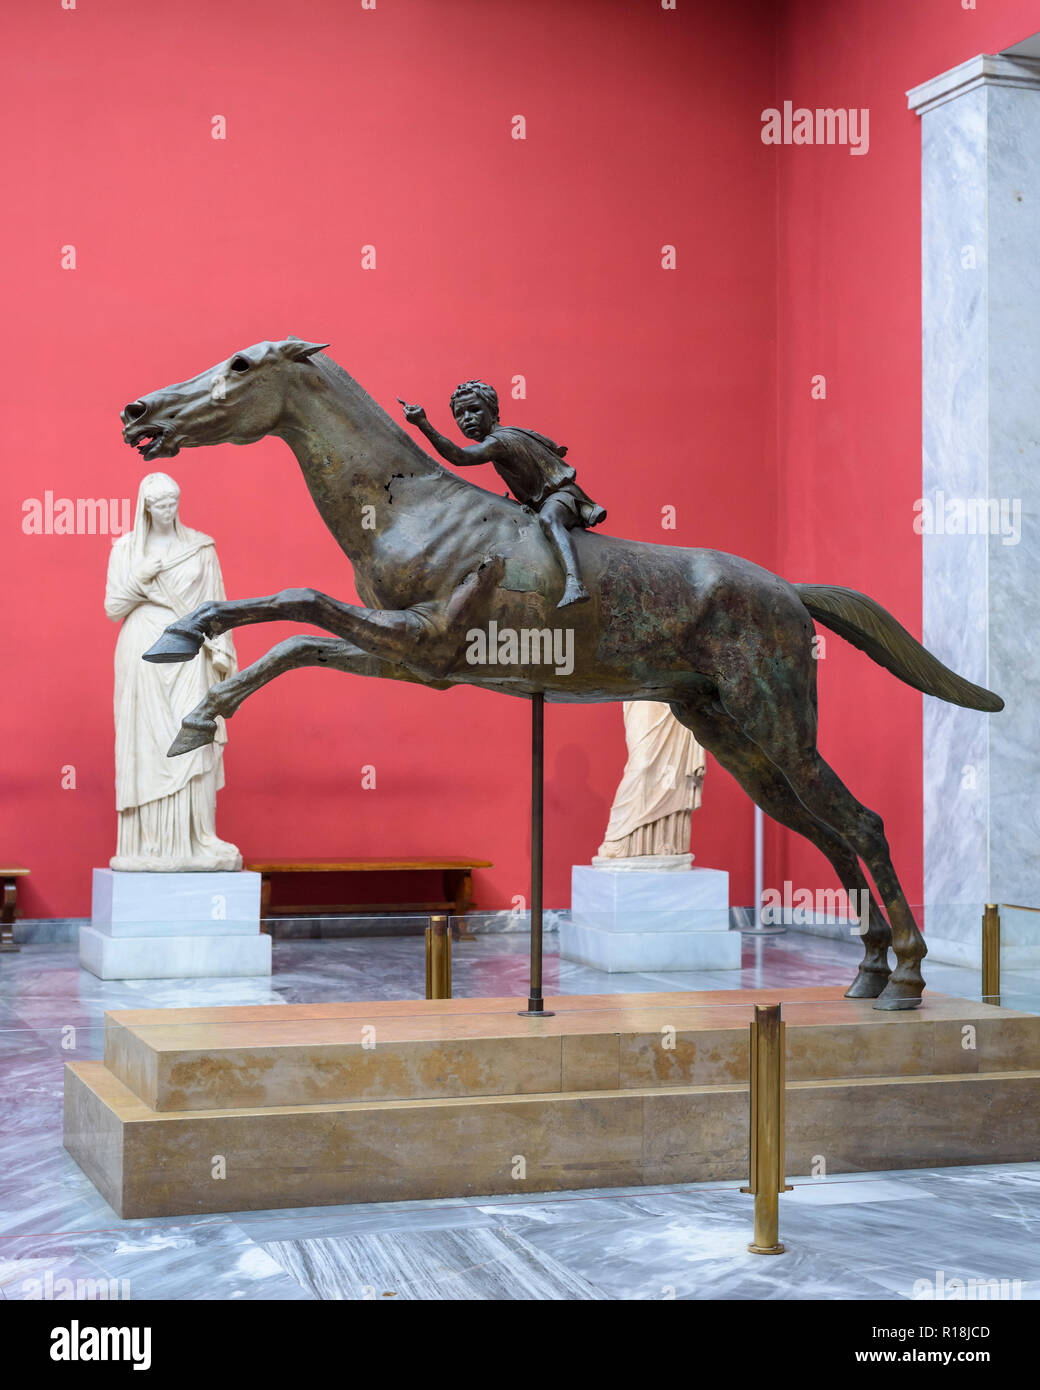 Athen. Griechenland. Das artemision Jockey, Bronzestatue eines Pferdes und junge Jockey, vom Ca. 140 v. Chr. Archäologischen Nationalmuseum von Athen. Der st Stockfoto